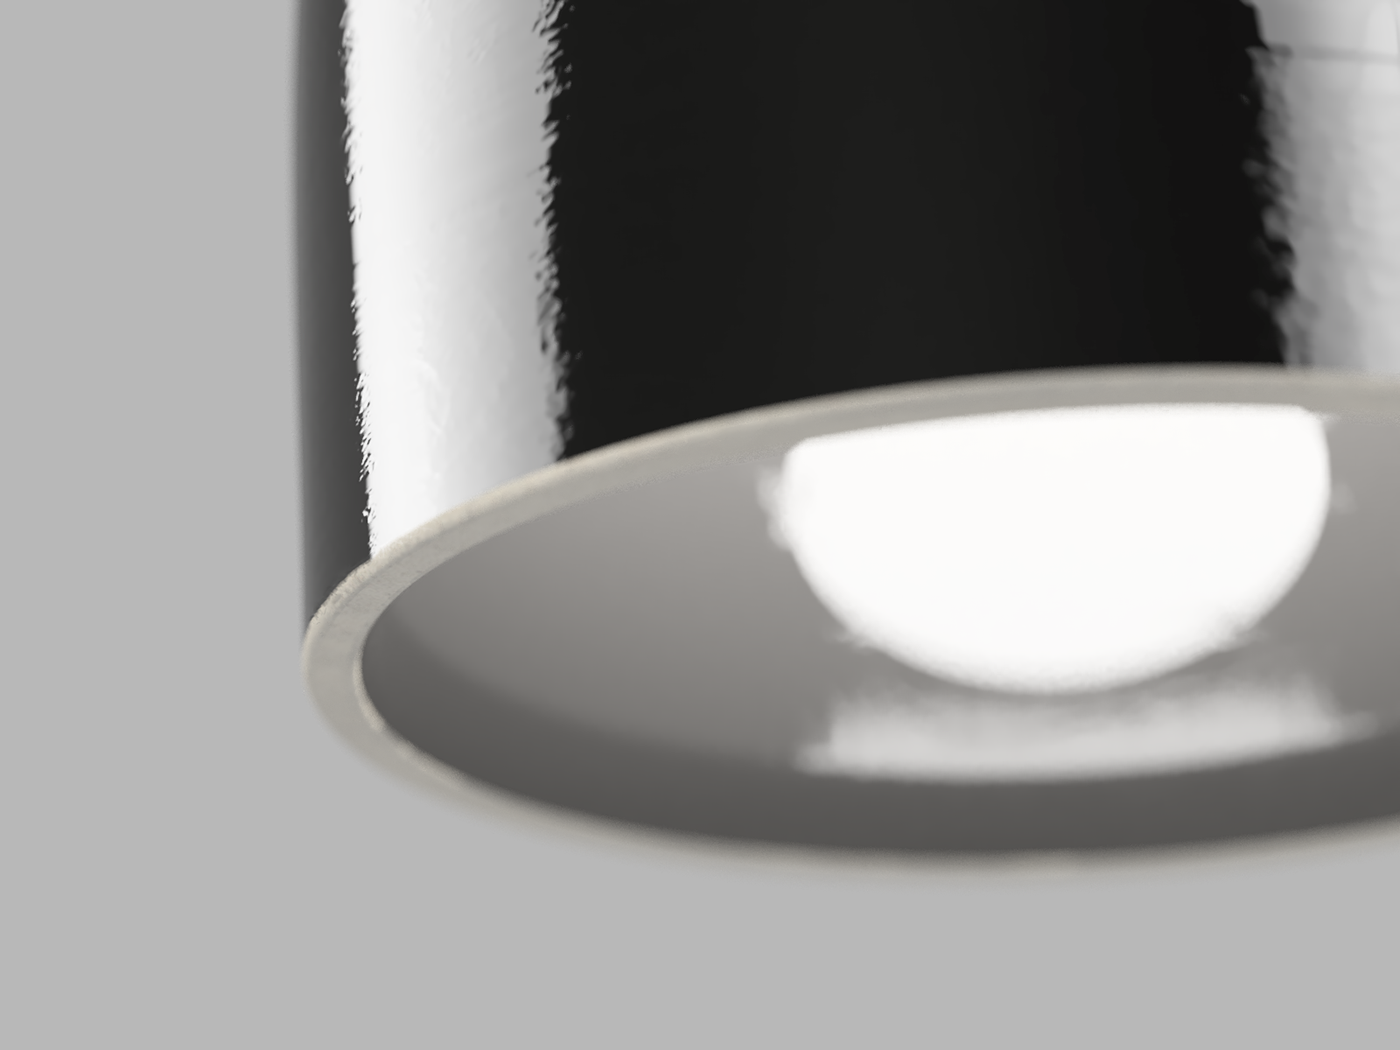 Kamp.studio whitelight White light Daniel Kamp pendants lighting Custom digital craft 3d printing